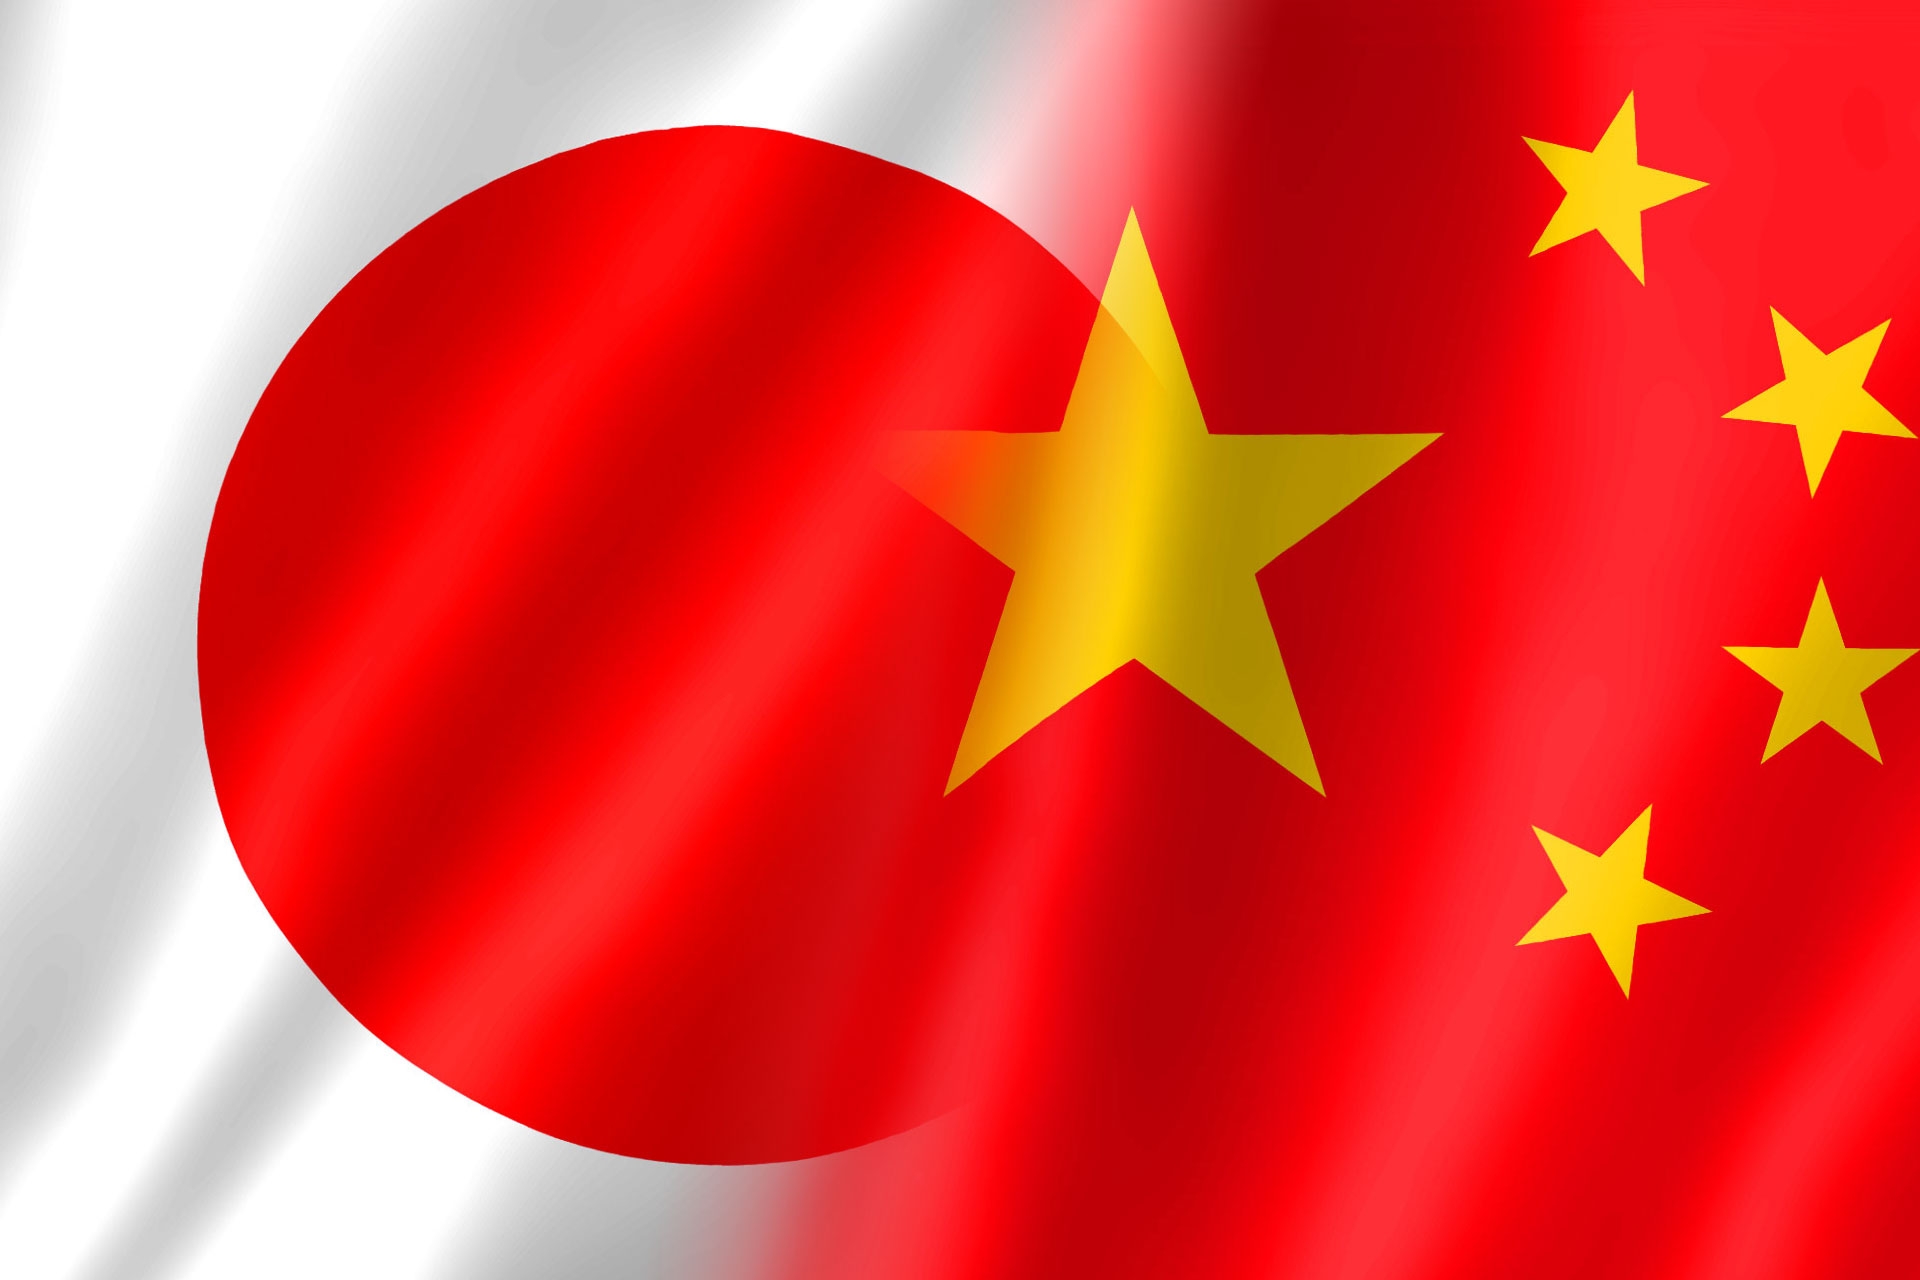 北京中道益通軟件技術有限公司と中華人民共和国を対象とした独占販売契約を締結しました。